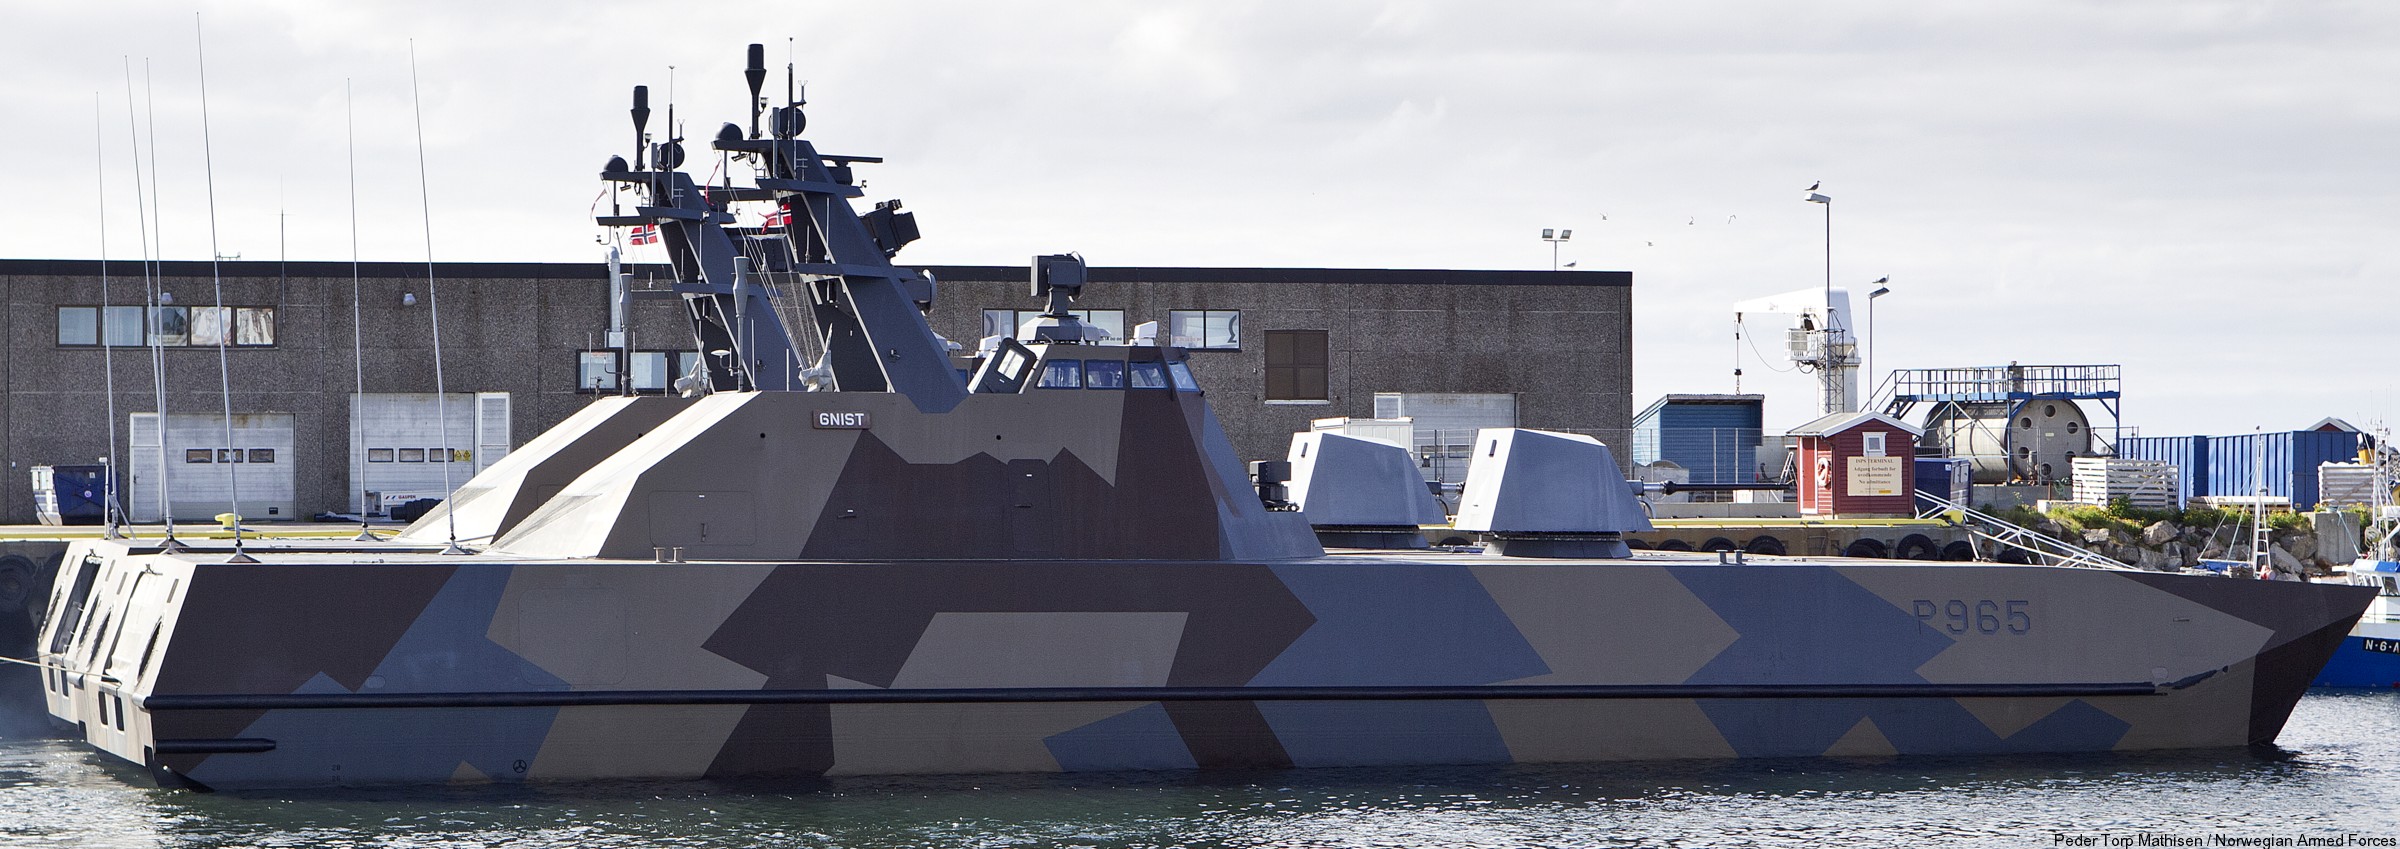 p-965 gnist knm hnoms skjold class corvette royal norwegian navy sjoforsvaret 05